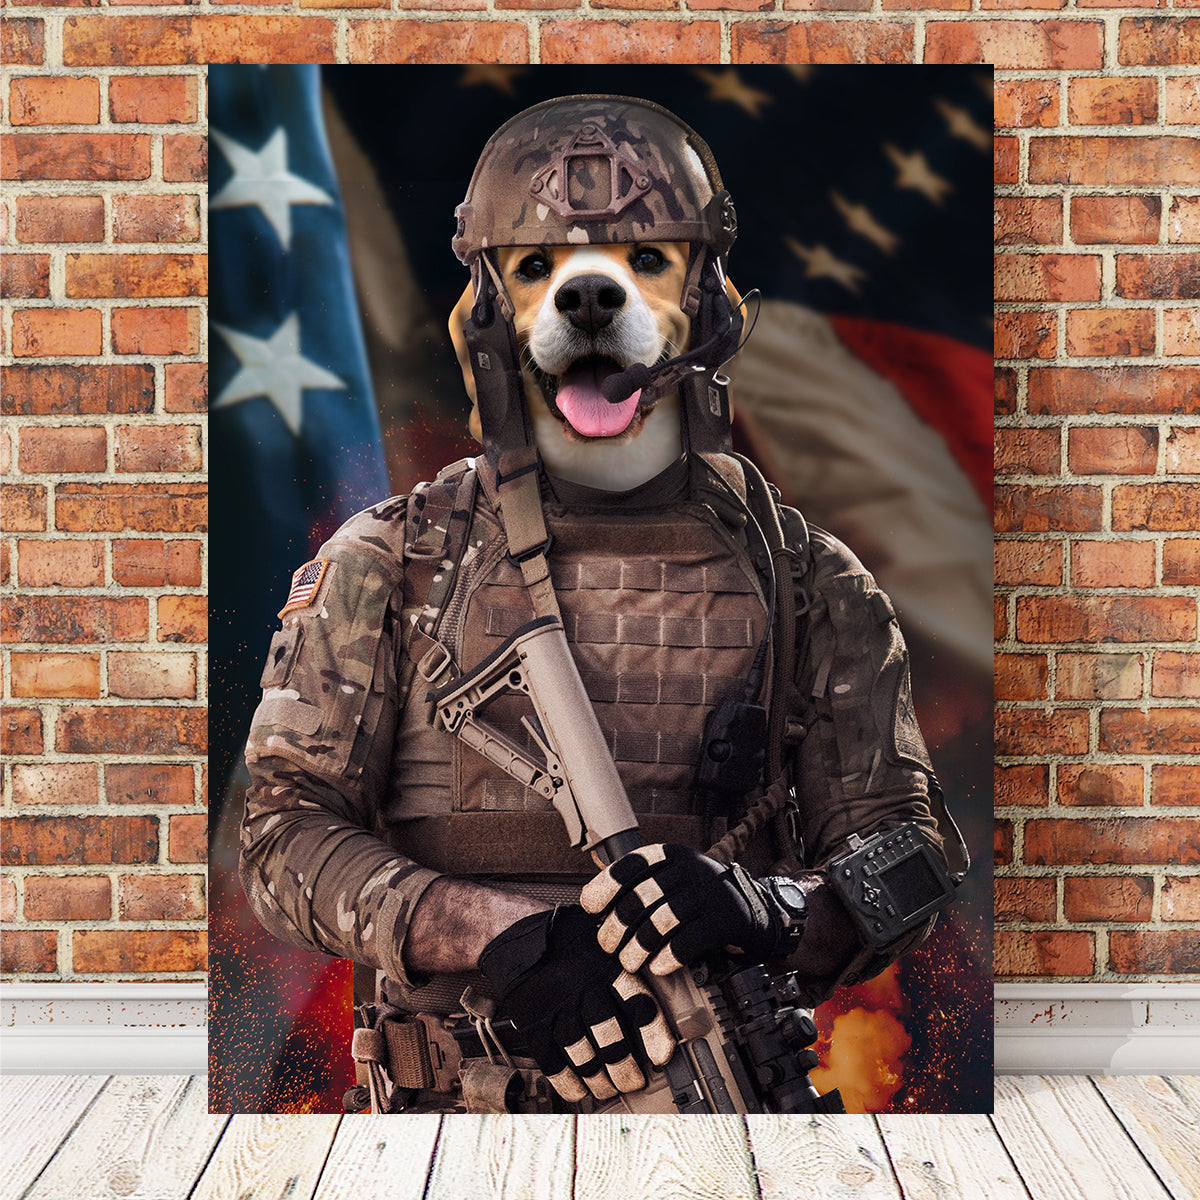 Dog Soldier